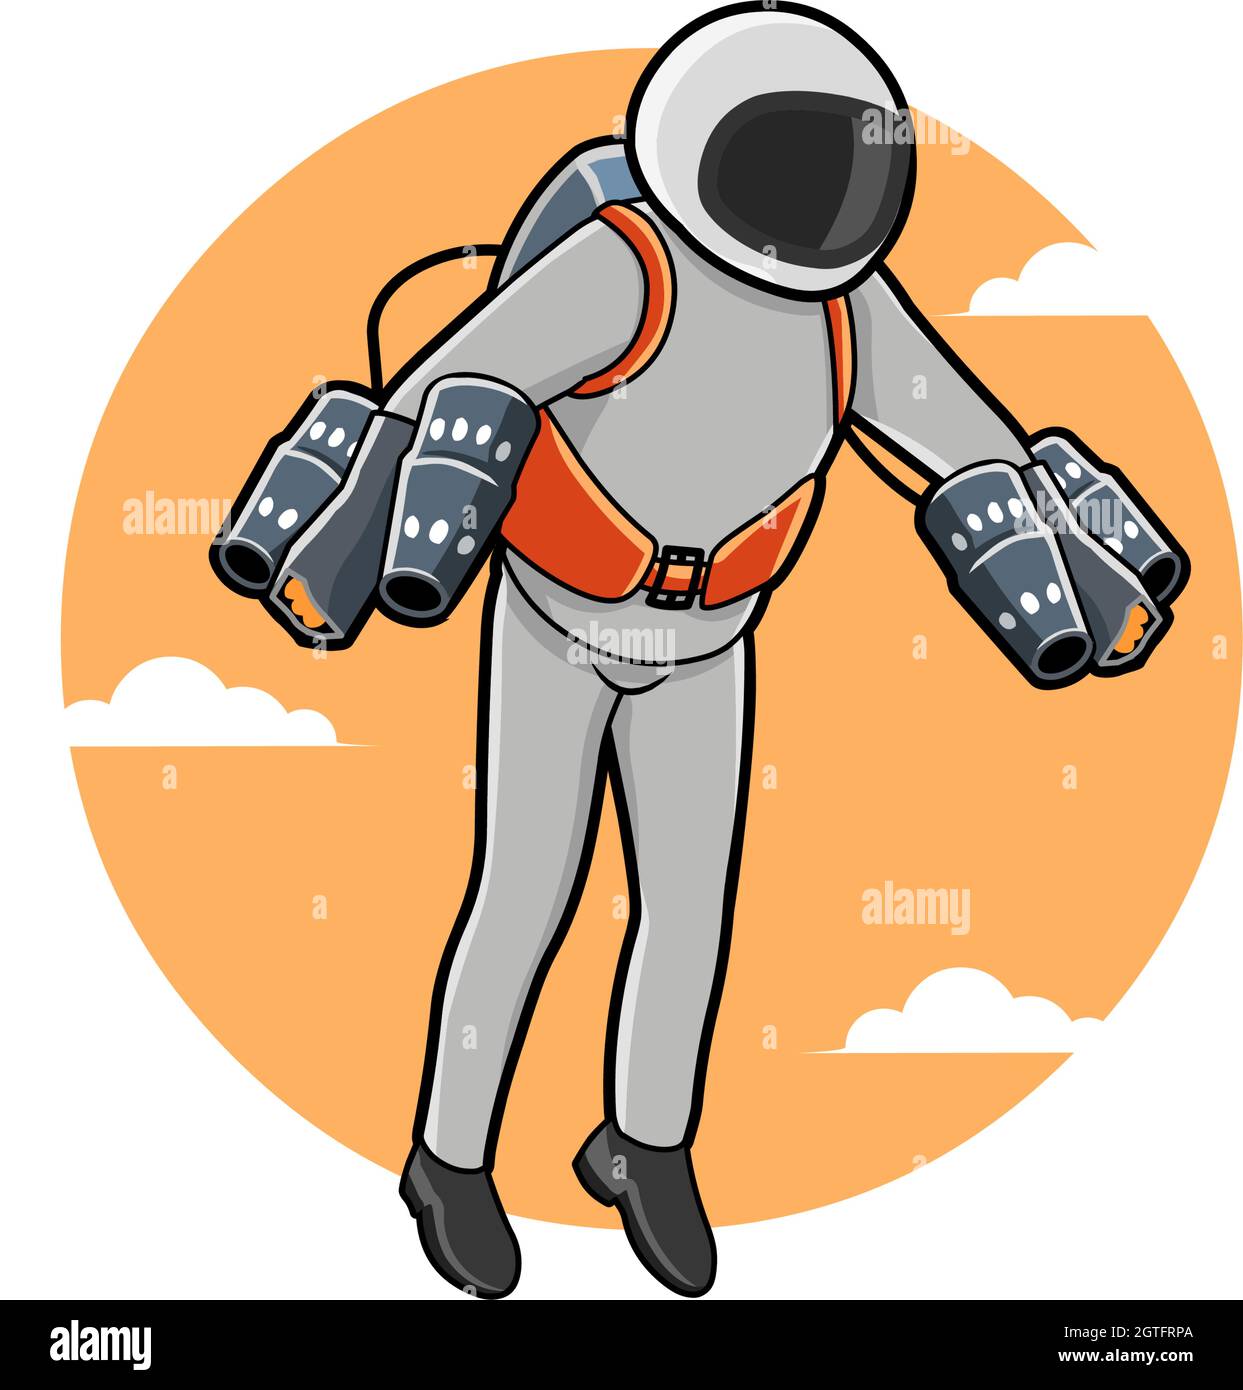 Vektor-Illustration von Jet Suit oder Flight Pack, neue Erfindung Stock Vektor